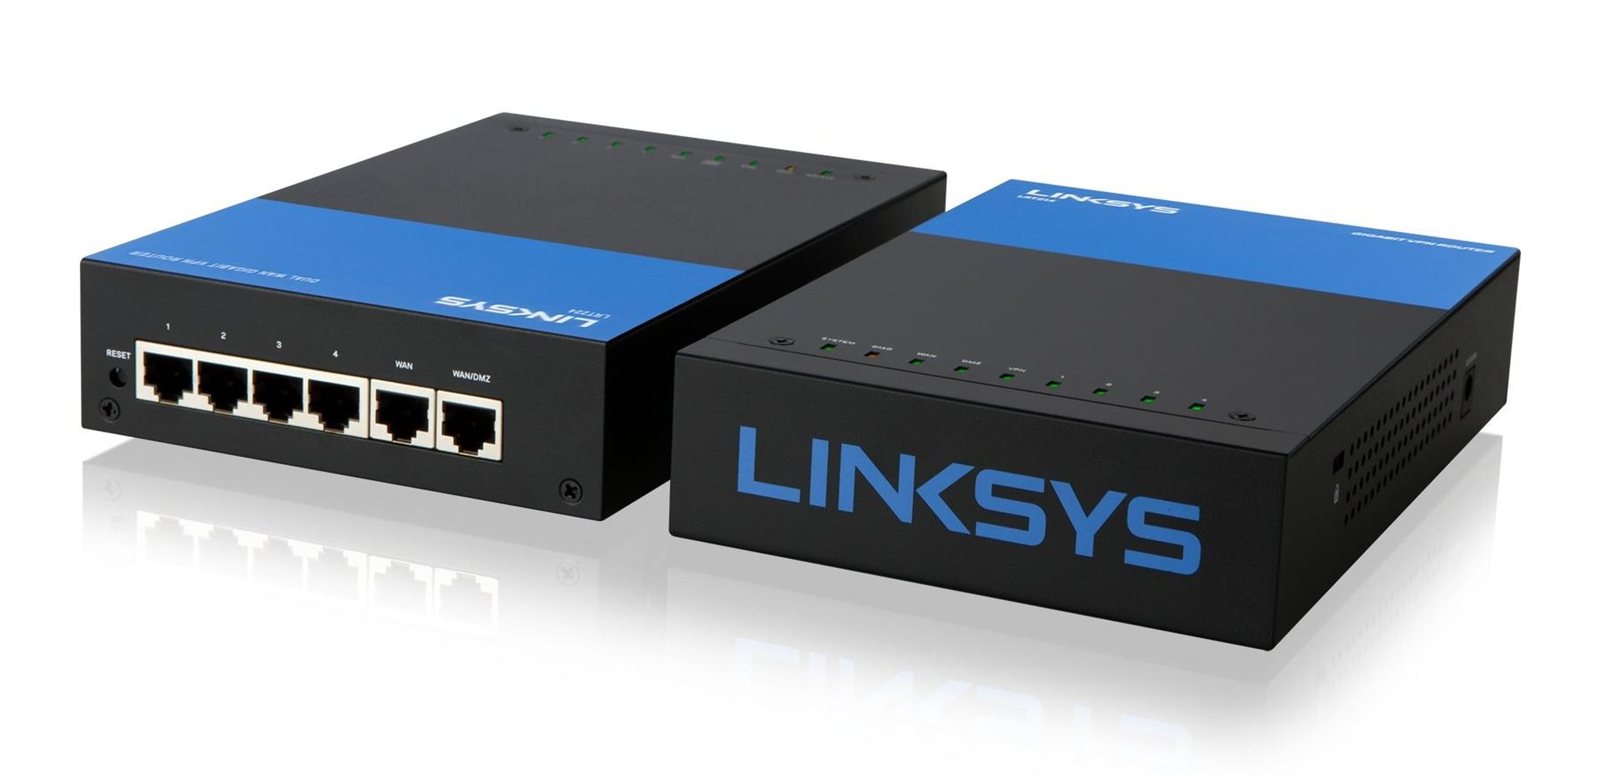 Thiết bị Linksys LRT214 Business Gigabit VPN Router